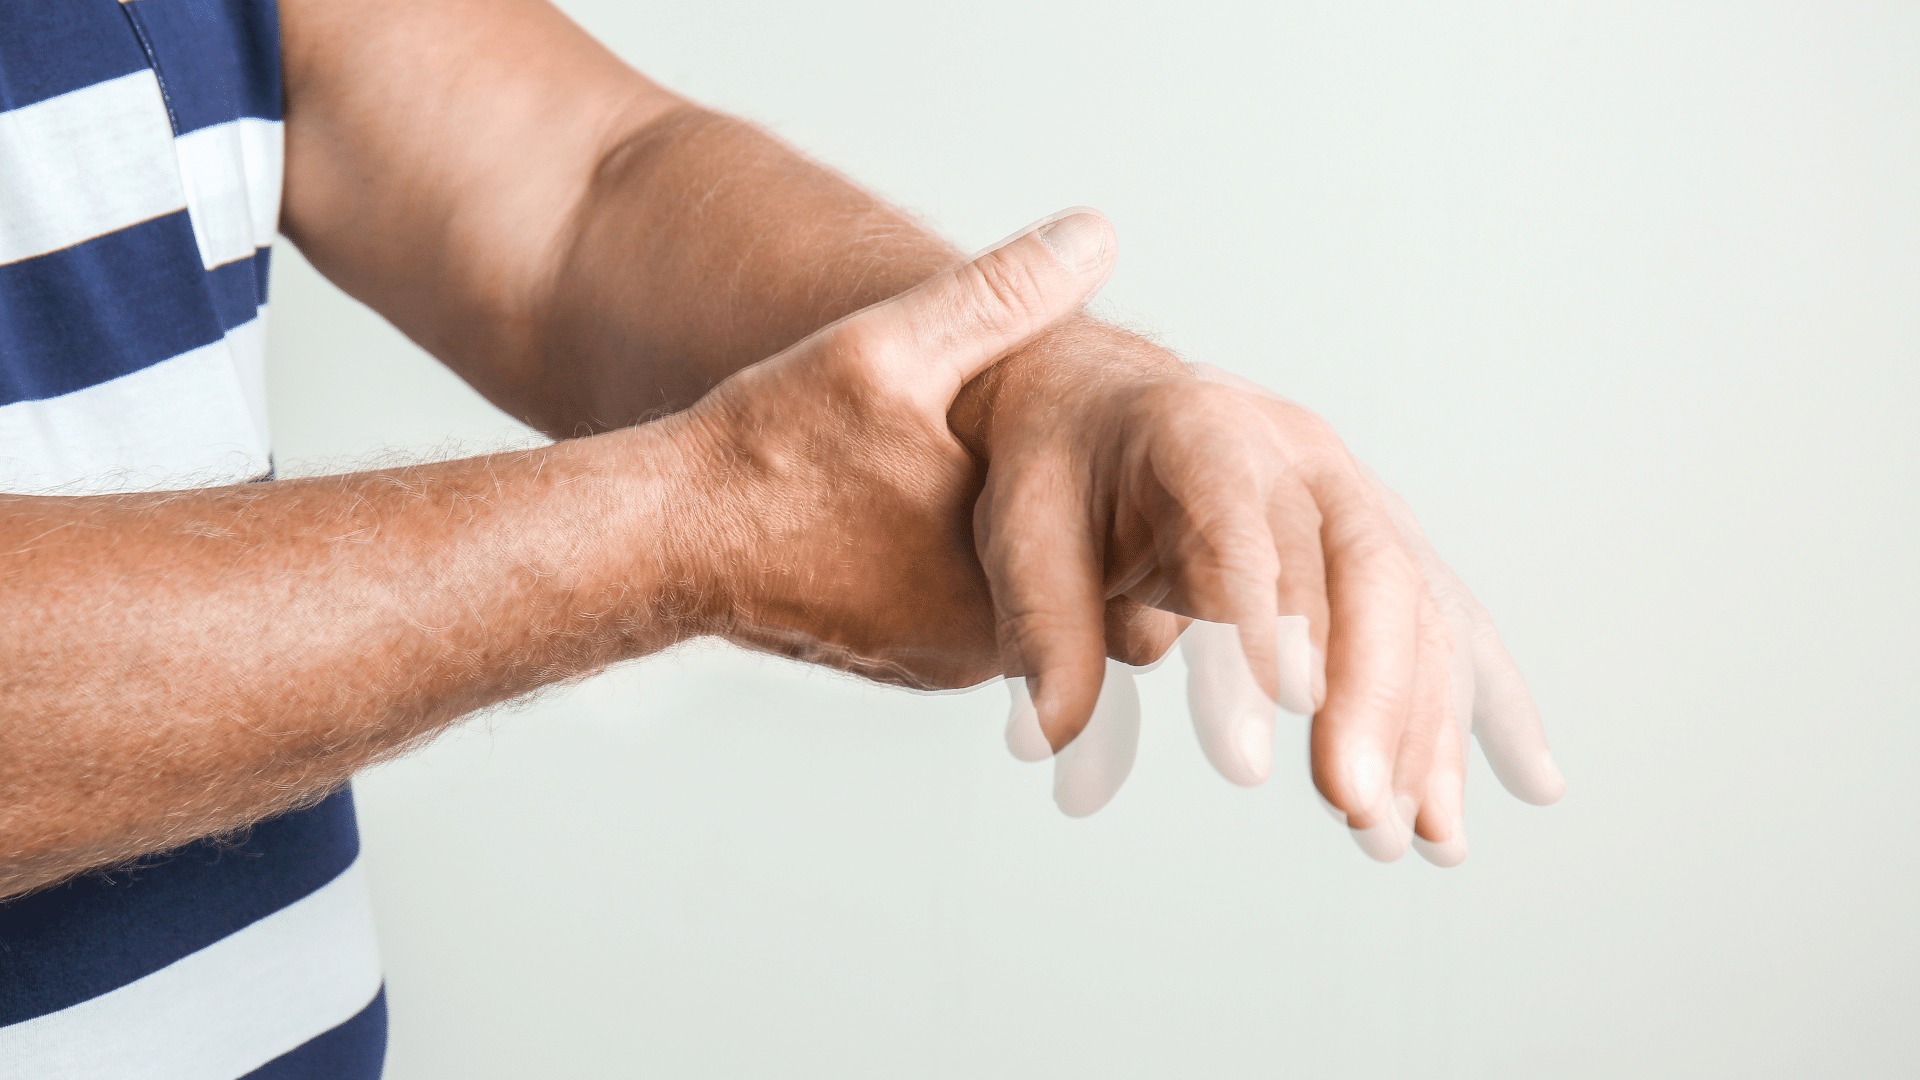 Imagen noticia ¿Qué es el Parkinson, cuáles son sus síntomas y tratamiento?